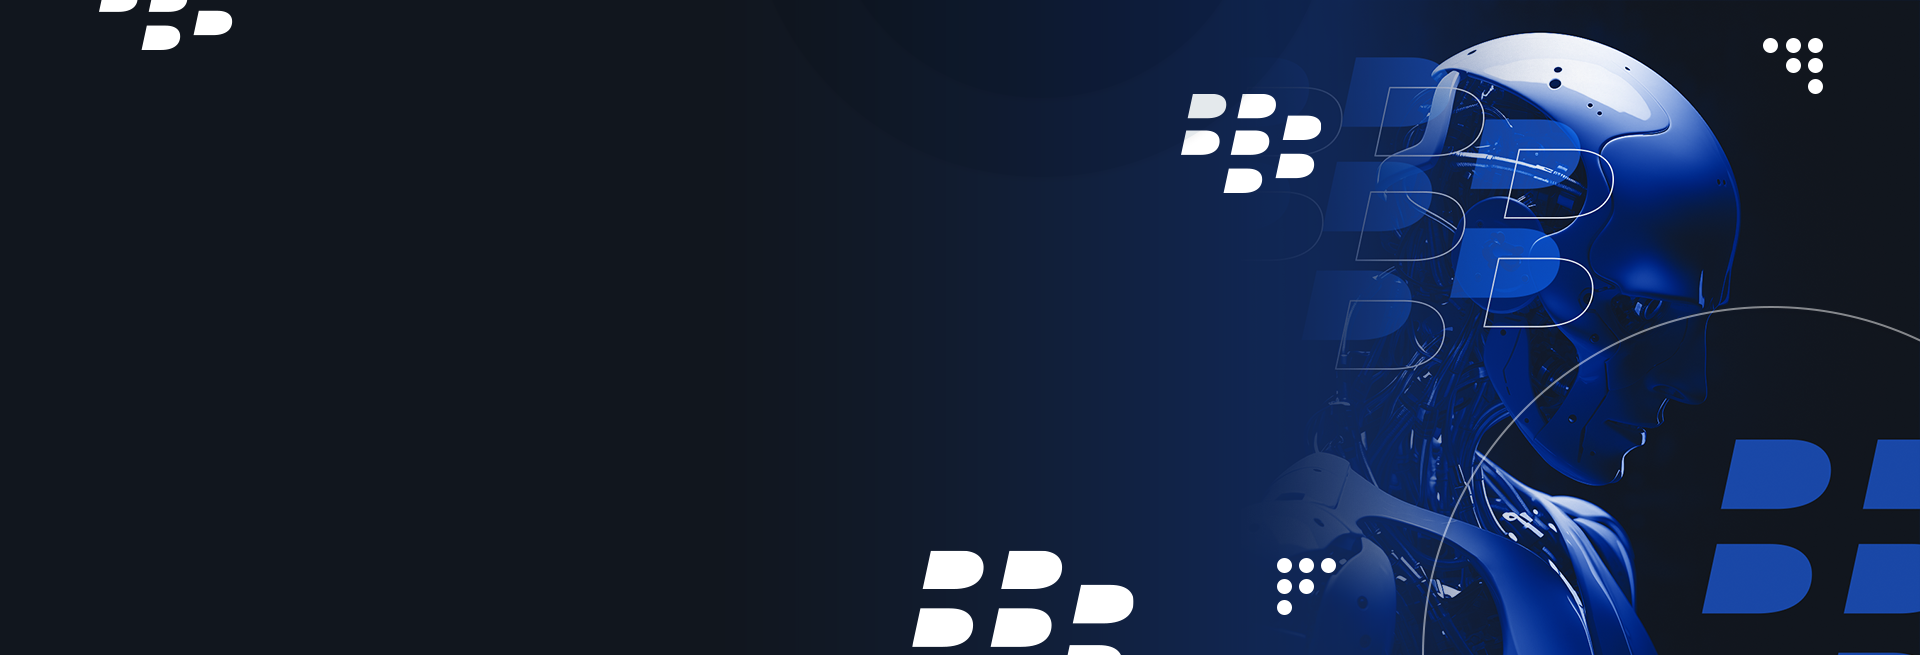 Proteção de endpoint com inteligência artificial da BlackBerry